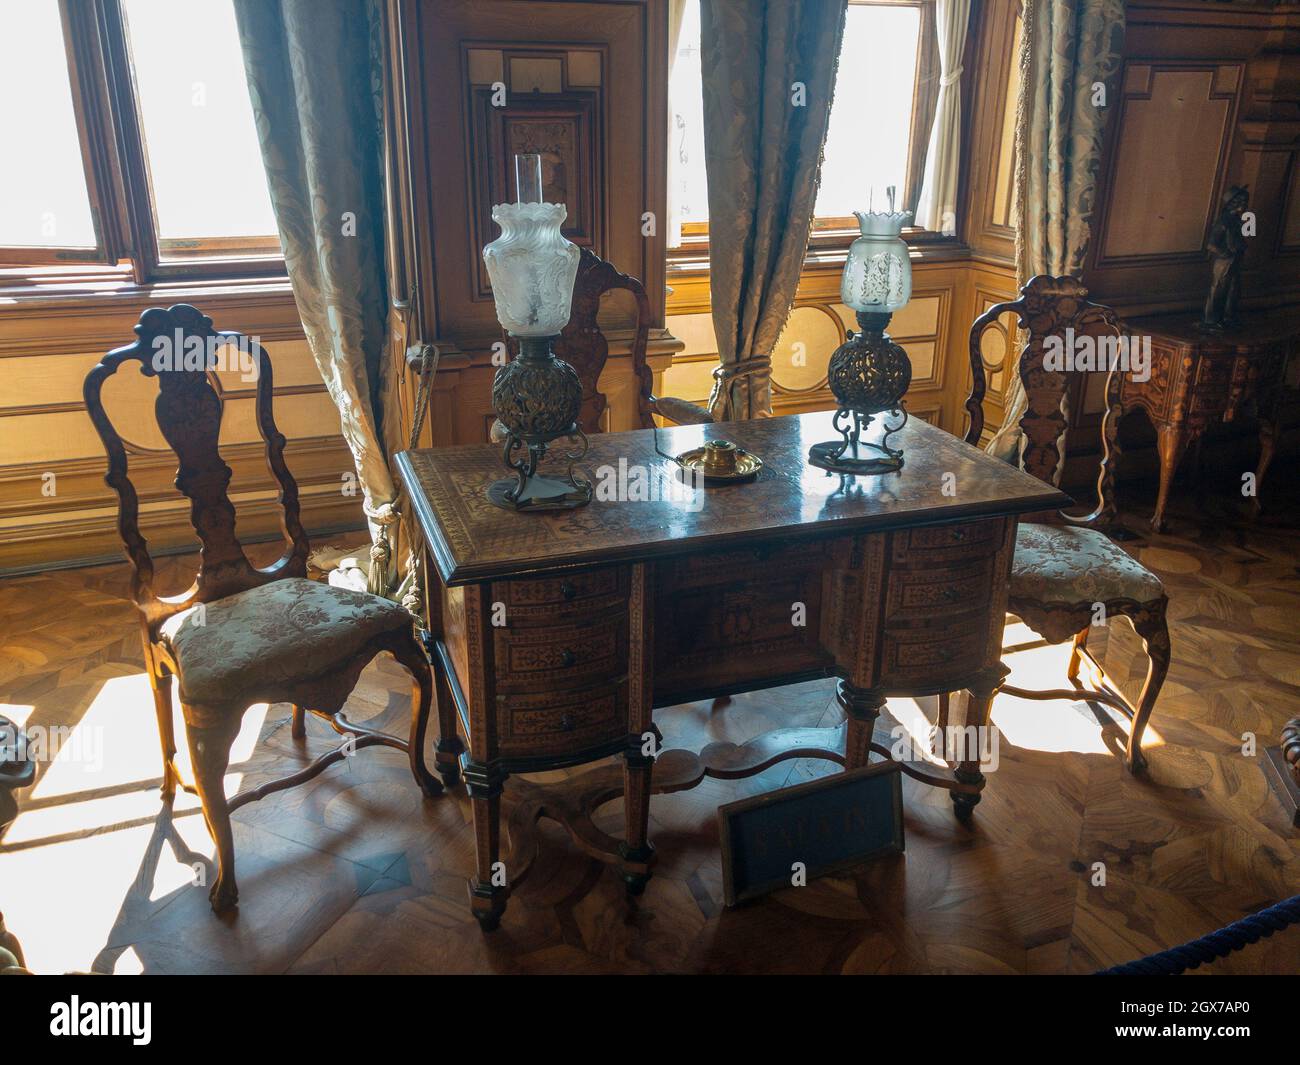 Bureau avec chaises et lampes à l'intérieur du château de Miramare près de  Trieste. Design intérieur. Musée historique. 09-05-2021. Italie Photo Stock  - Alamy